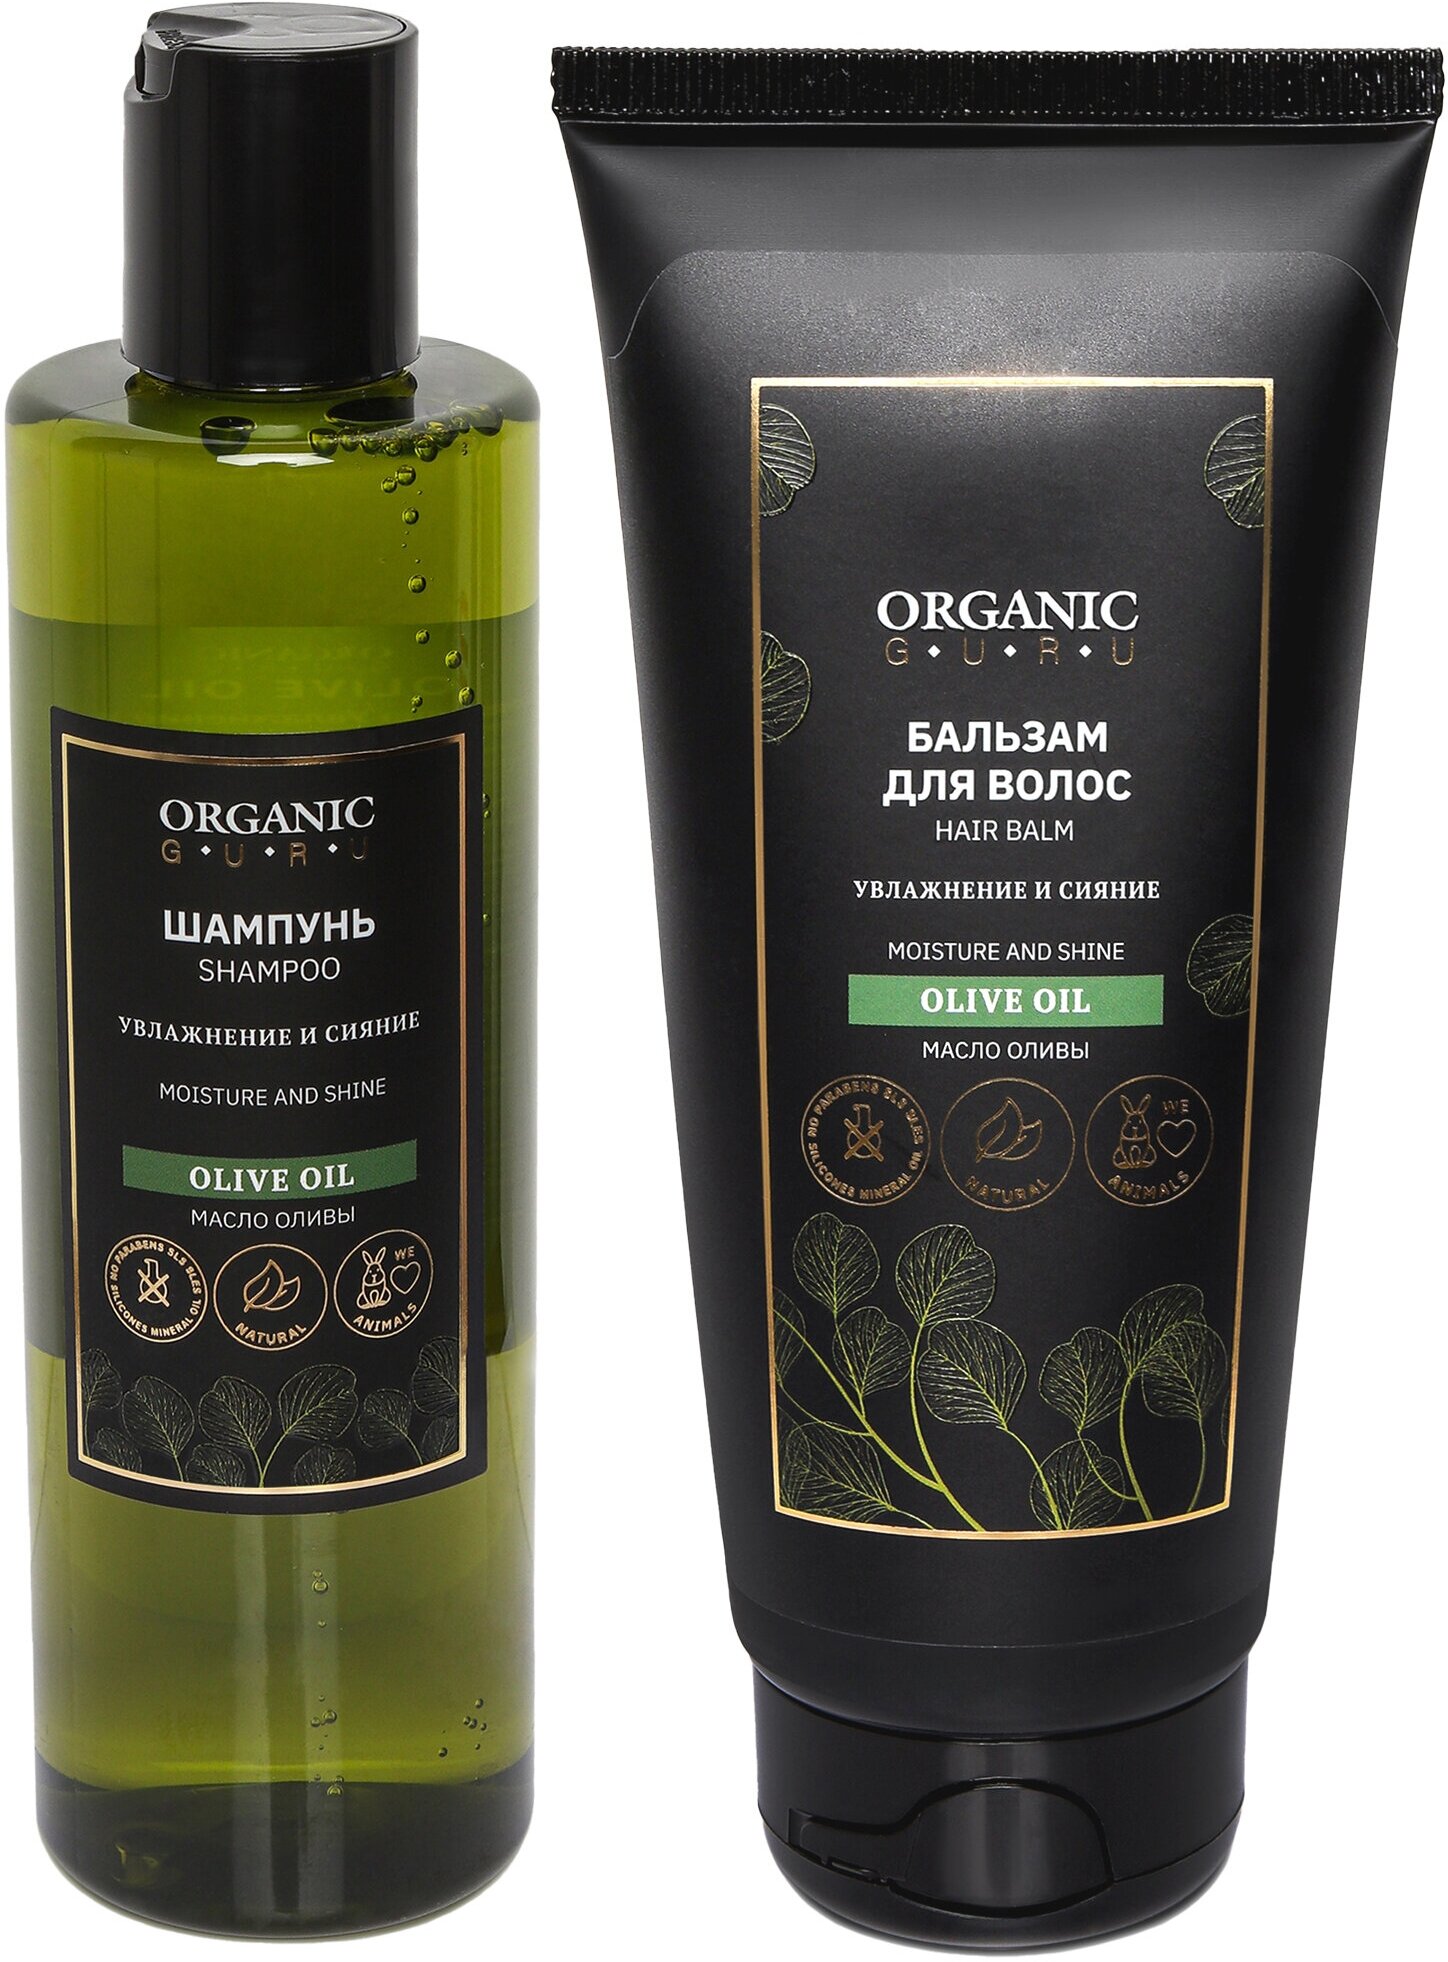 Шампунь для волос "Оливковое масло" 250 ml. + Бальзам ополаскиватель "Olive OIL" 200 ml. Без SLS и парабенов, бессульфатный, органический.